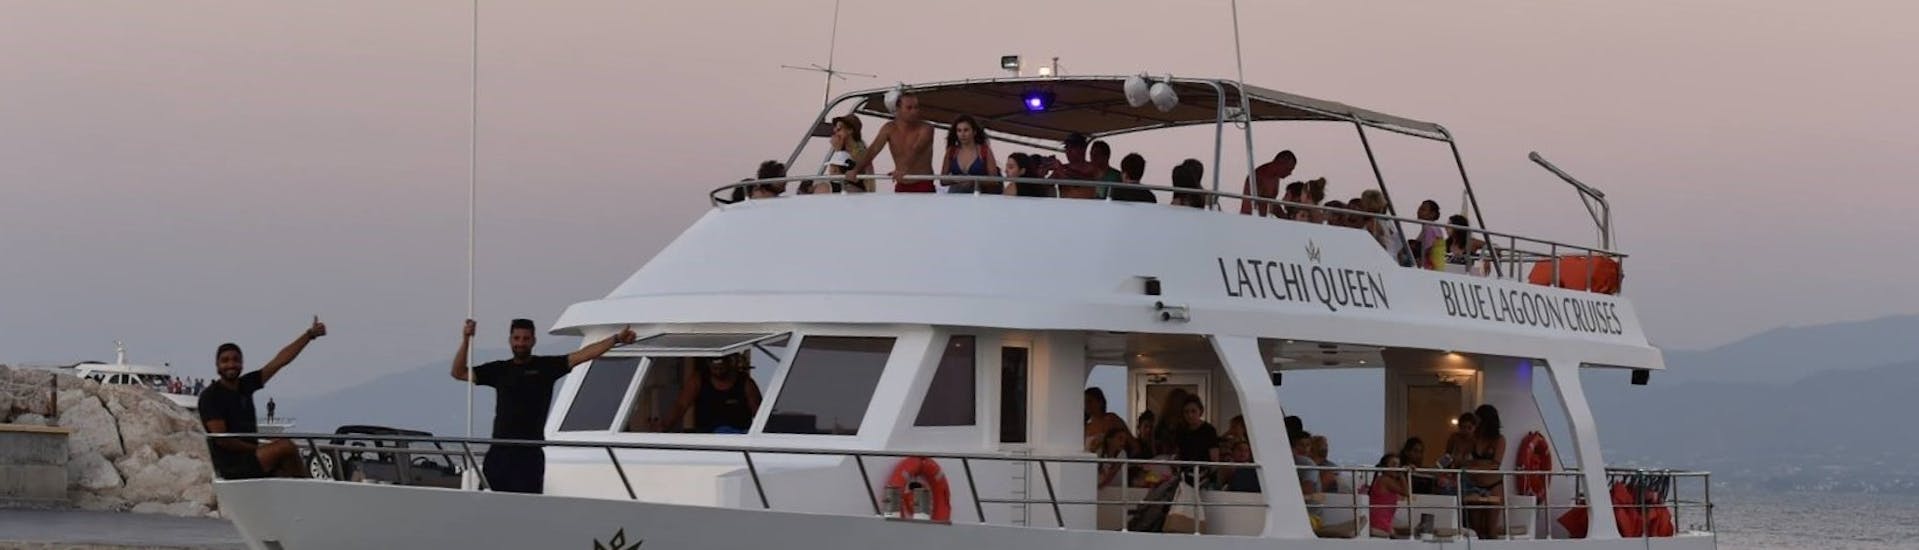 Boottocht van Latchi naar Blauwe Lagune (Akamas, Cyprus) met toeristische attracties.